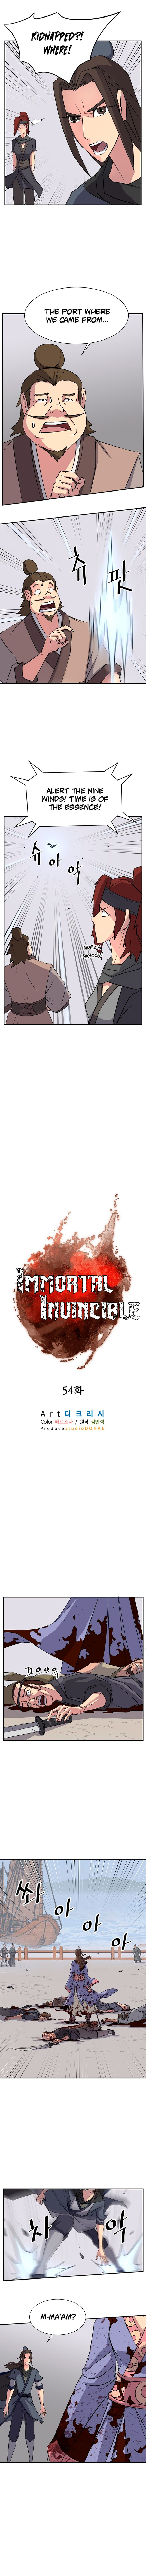 Immortal, Invincible - Page 2